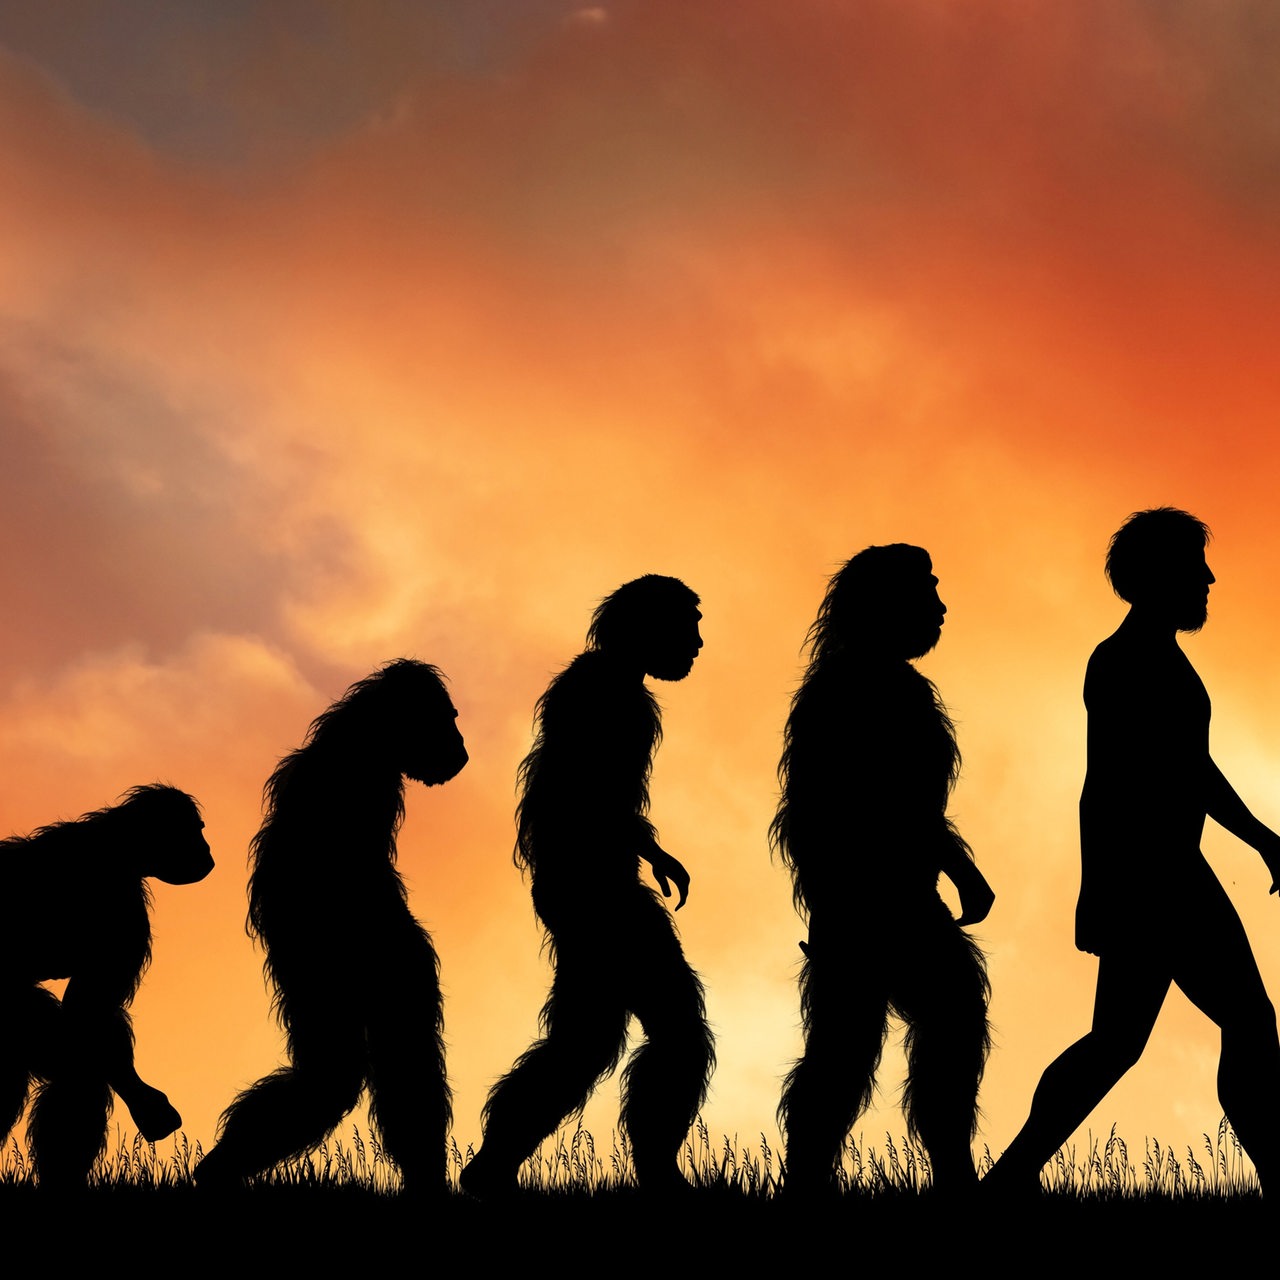 Menschliche Evolution mit Silhouetten dargestellt (Symbolbild)